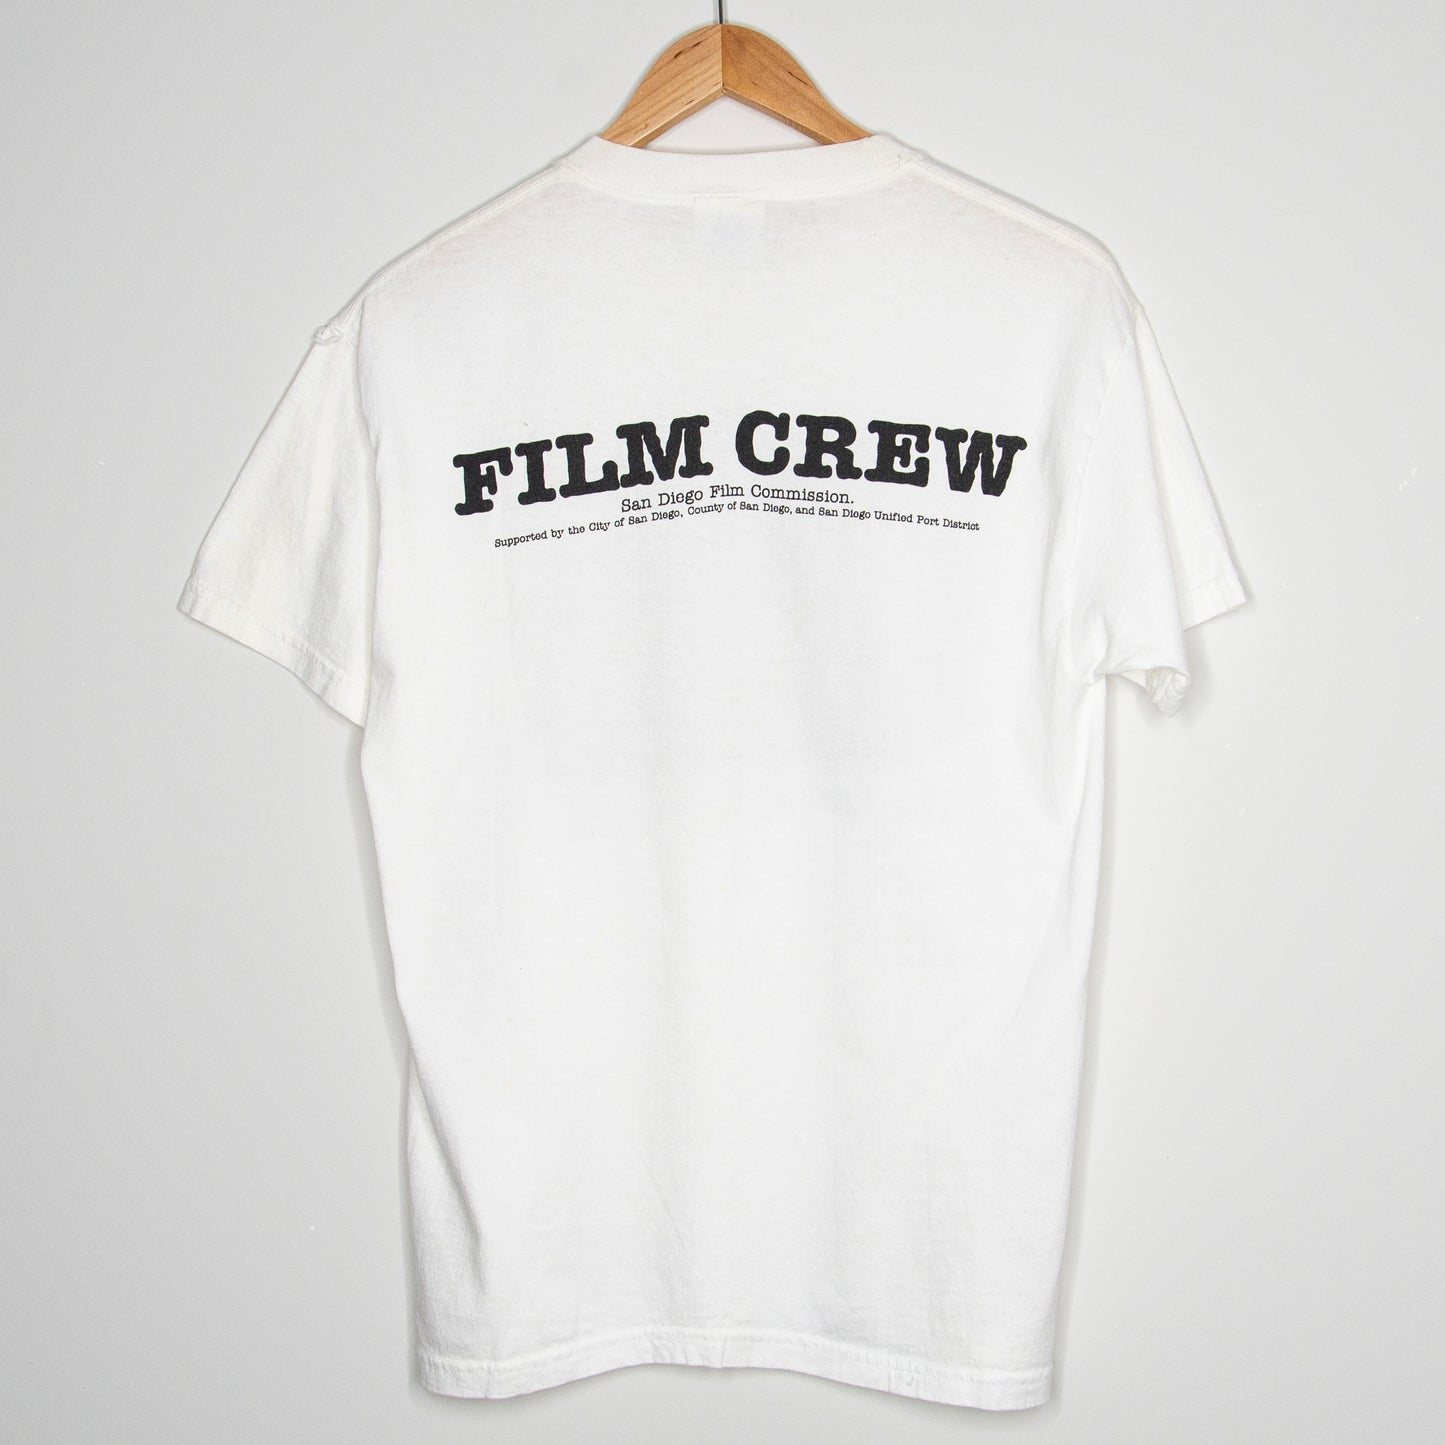 2002 X-Files 'Last Episode Film Crew' T-Shirt Medium